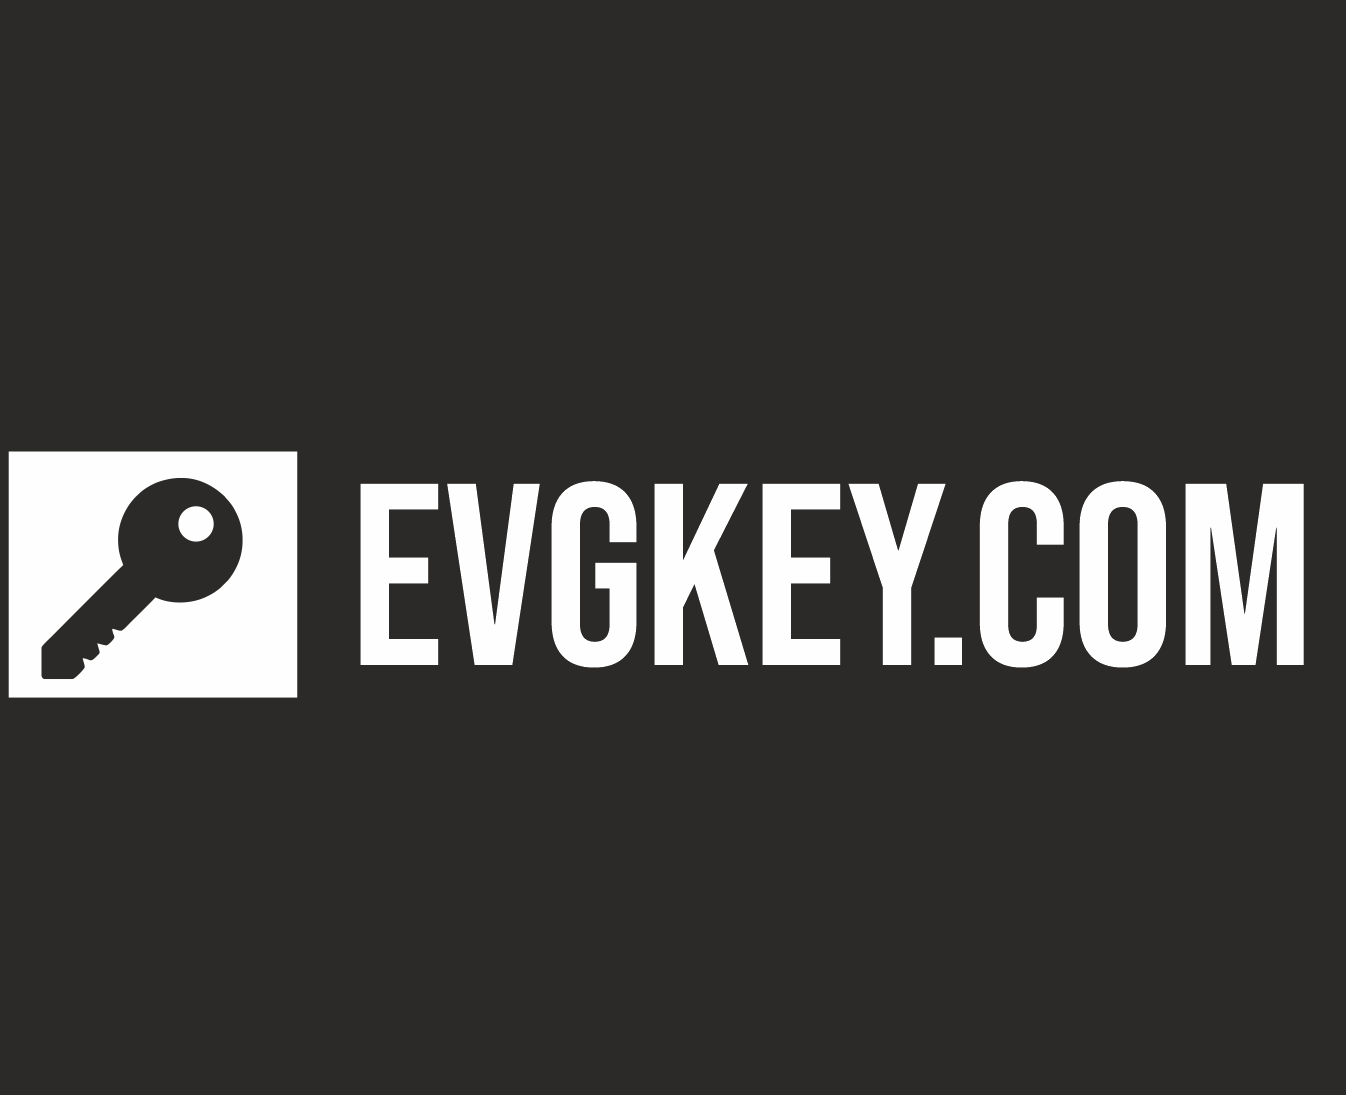 Evgkey-logo poprawka2.png